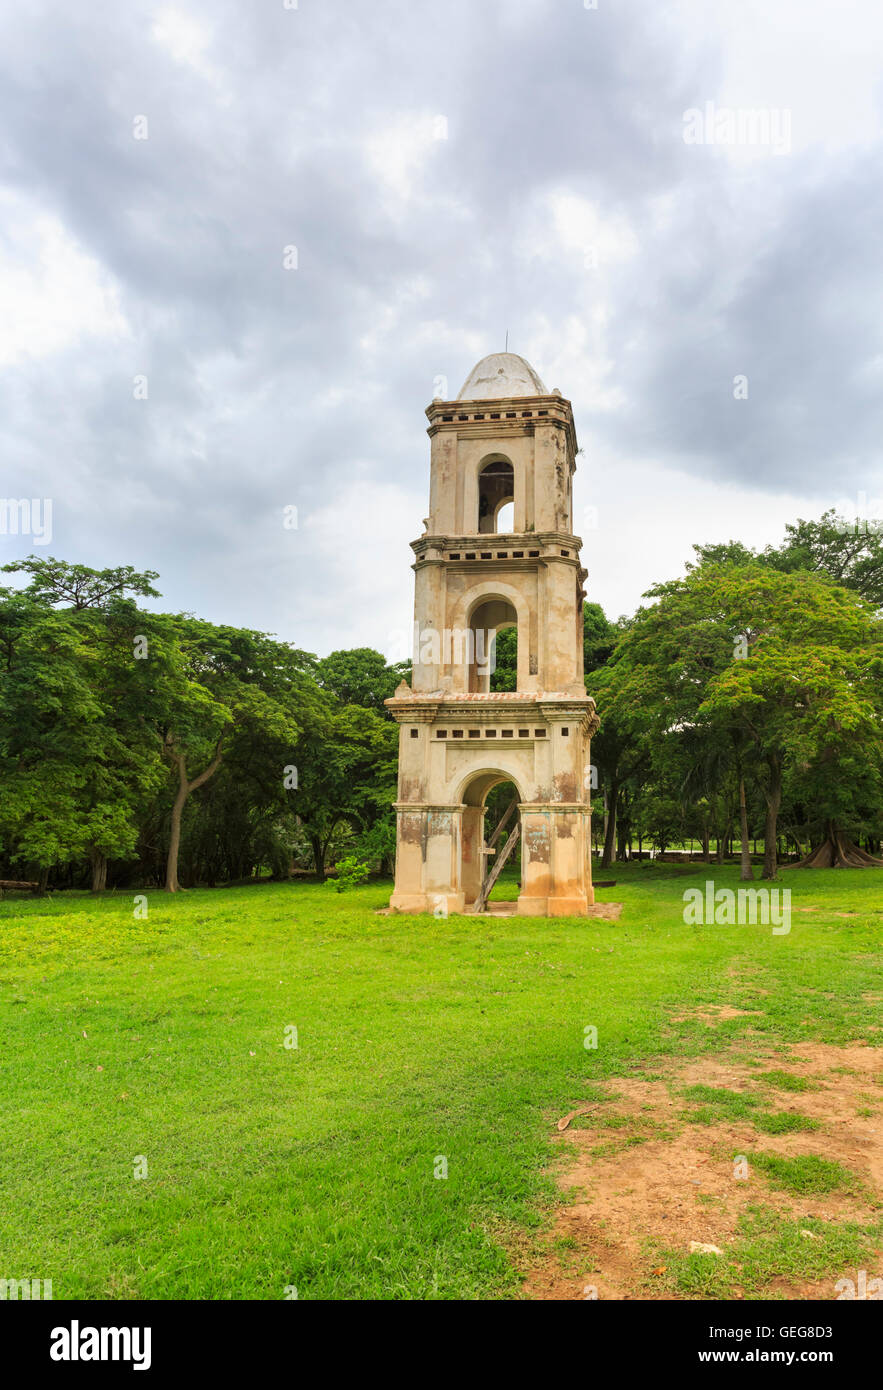 Bell tower of San Isidro de los Destiladeros, restored historic Sugar Mill estate in the Valle de los Ingenios, Cuba Stock Photo